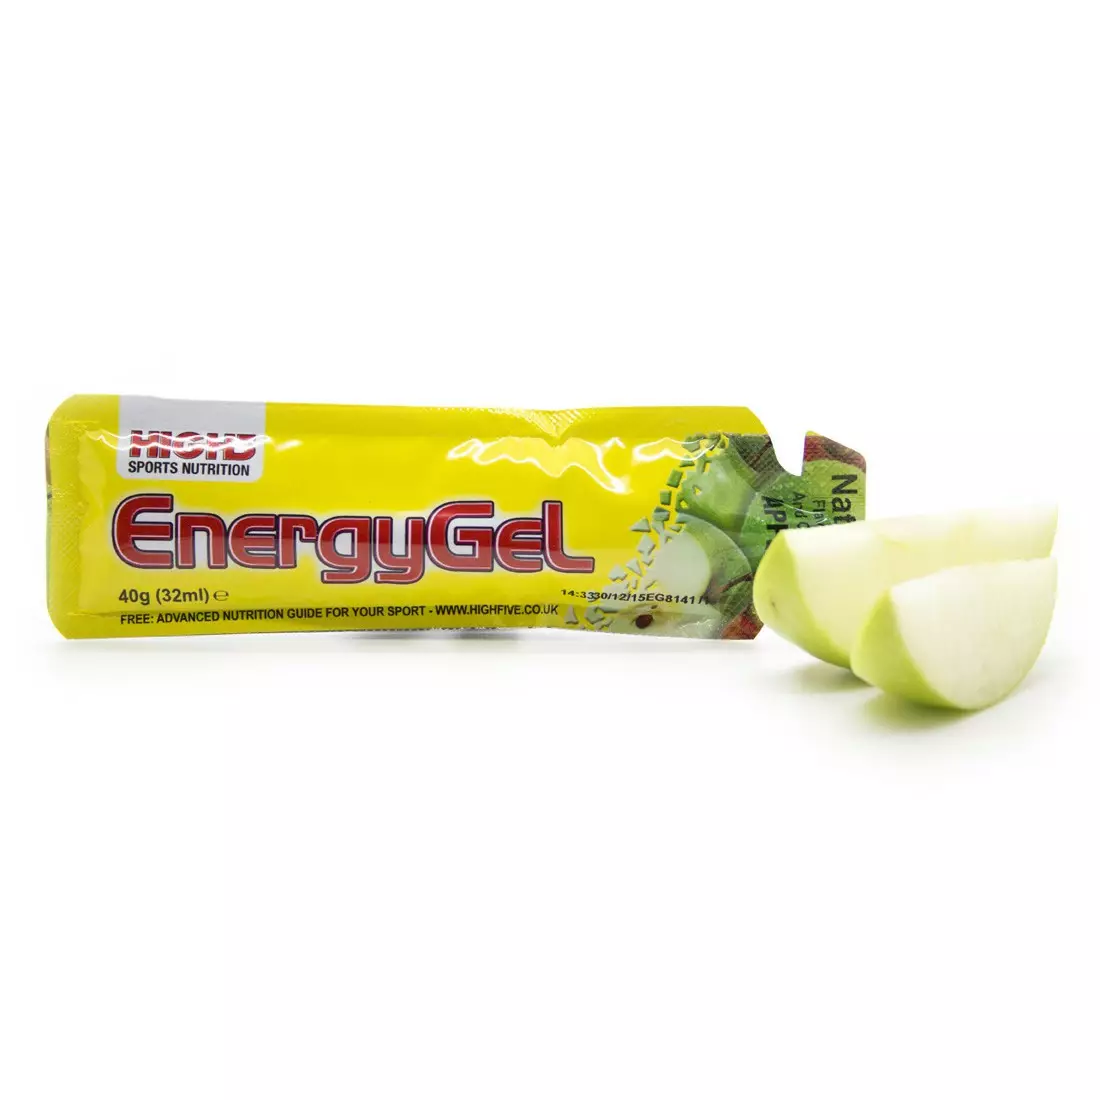 HIGH5 EnergyGel energy gel flavor: APPLE capacity. 32 ml